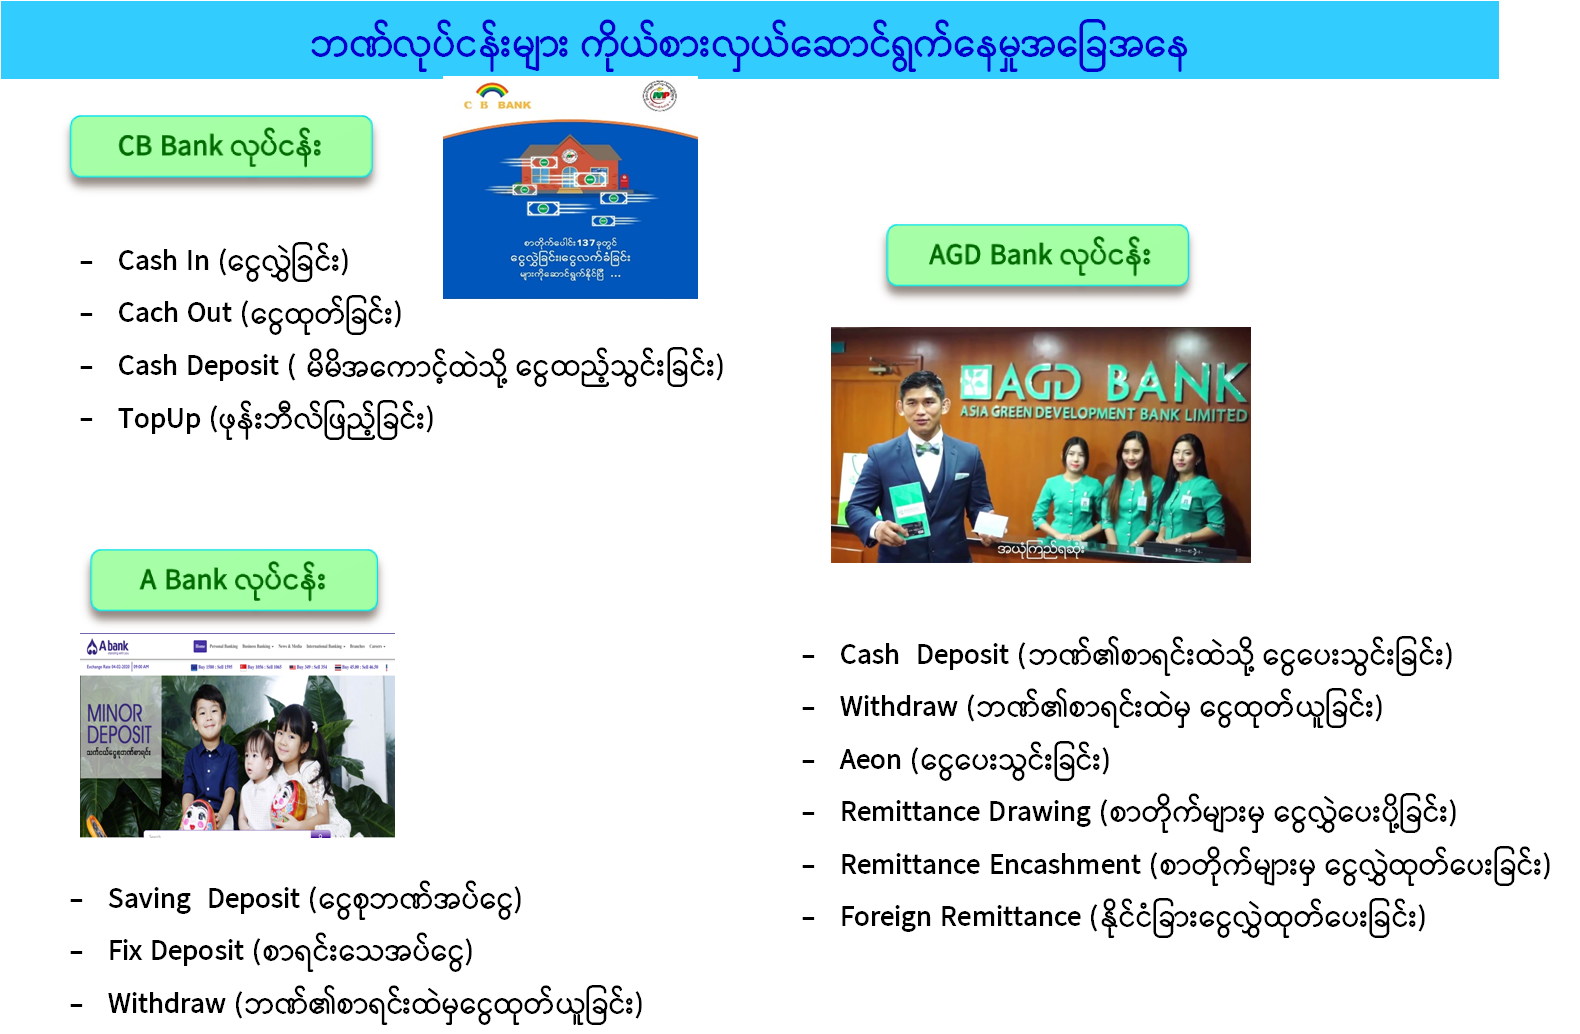 မြန်မာ့စာတိုက်လုပ်ငန်း၏ ၂၀၁၆-၂၀၁၇ မှ ၂၀၁၉-၂၀၂၀ ထိ  လုပ်ငန်းဆောင်ရွက်တိုးတက်မှု (၁)